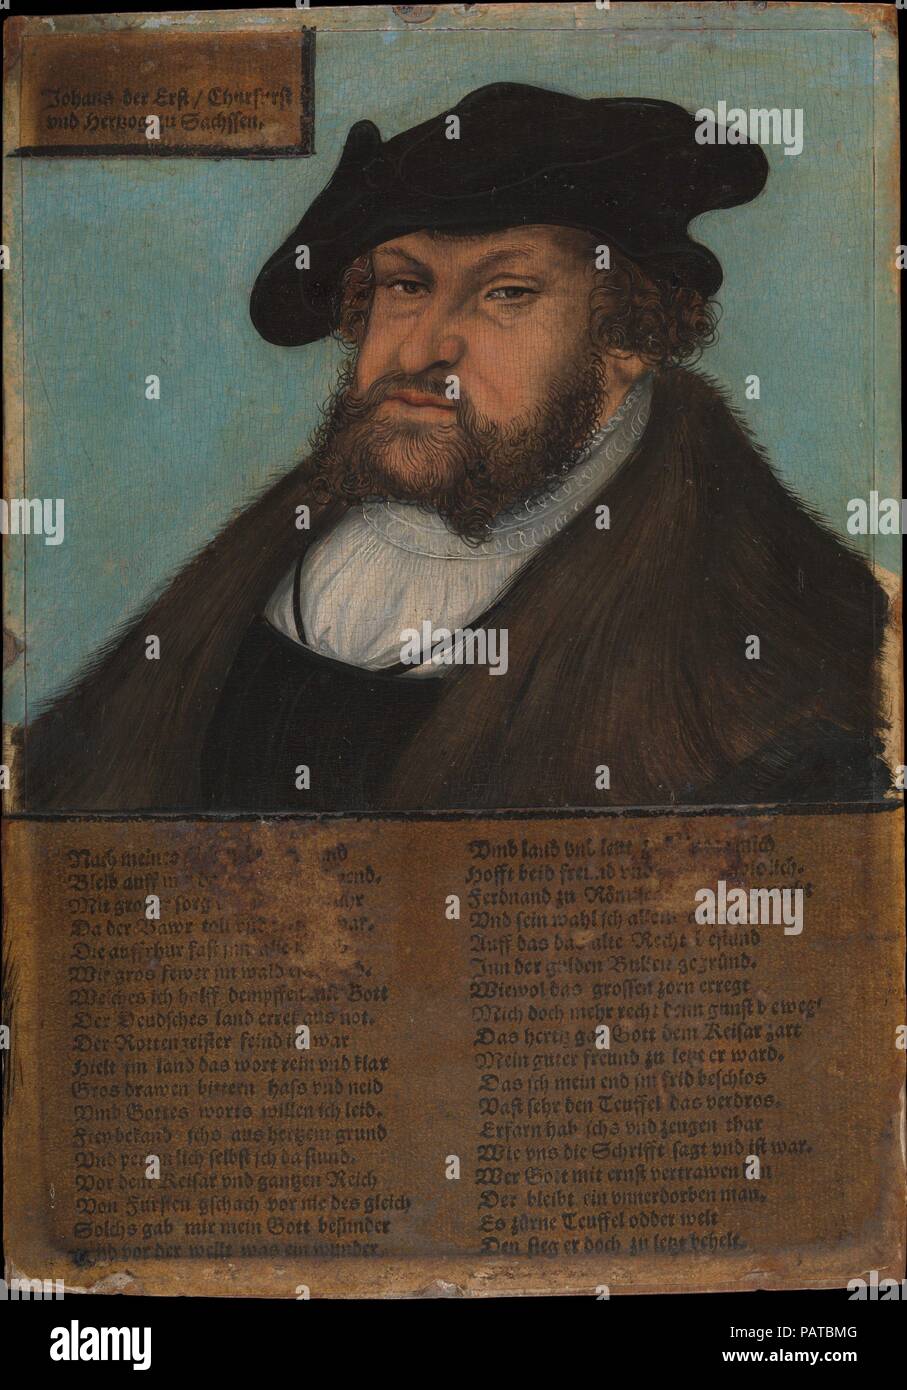 Johann I (1468-1532), constante, príncipe elector de Sajonia. Artista: Lucas Cranach y taller (alemán, 1472-1553 Kronach Weimar). Dimensiones: 8 x 5 5/8 in. (20,3 x 14,3 cm). Fecha: 1532-33. Estos retratos póstuma de los electores de Sajonia Federico III, el sabio, y de Johann I, la constante pertenecen a una serie de sesenta pares de retrato, ordenadas por Johann I su hijo y sucesor, Johann Friedrich I, el Magnánimo, cuando llegó a ser elector en 1532. Él destina los retratos de su padre y su tío a servir como instrumentos de propaganda. El acompañamiento poemas elogiosos enfatizan el pasaje Foto de stock